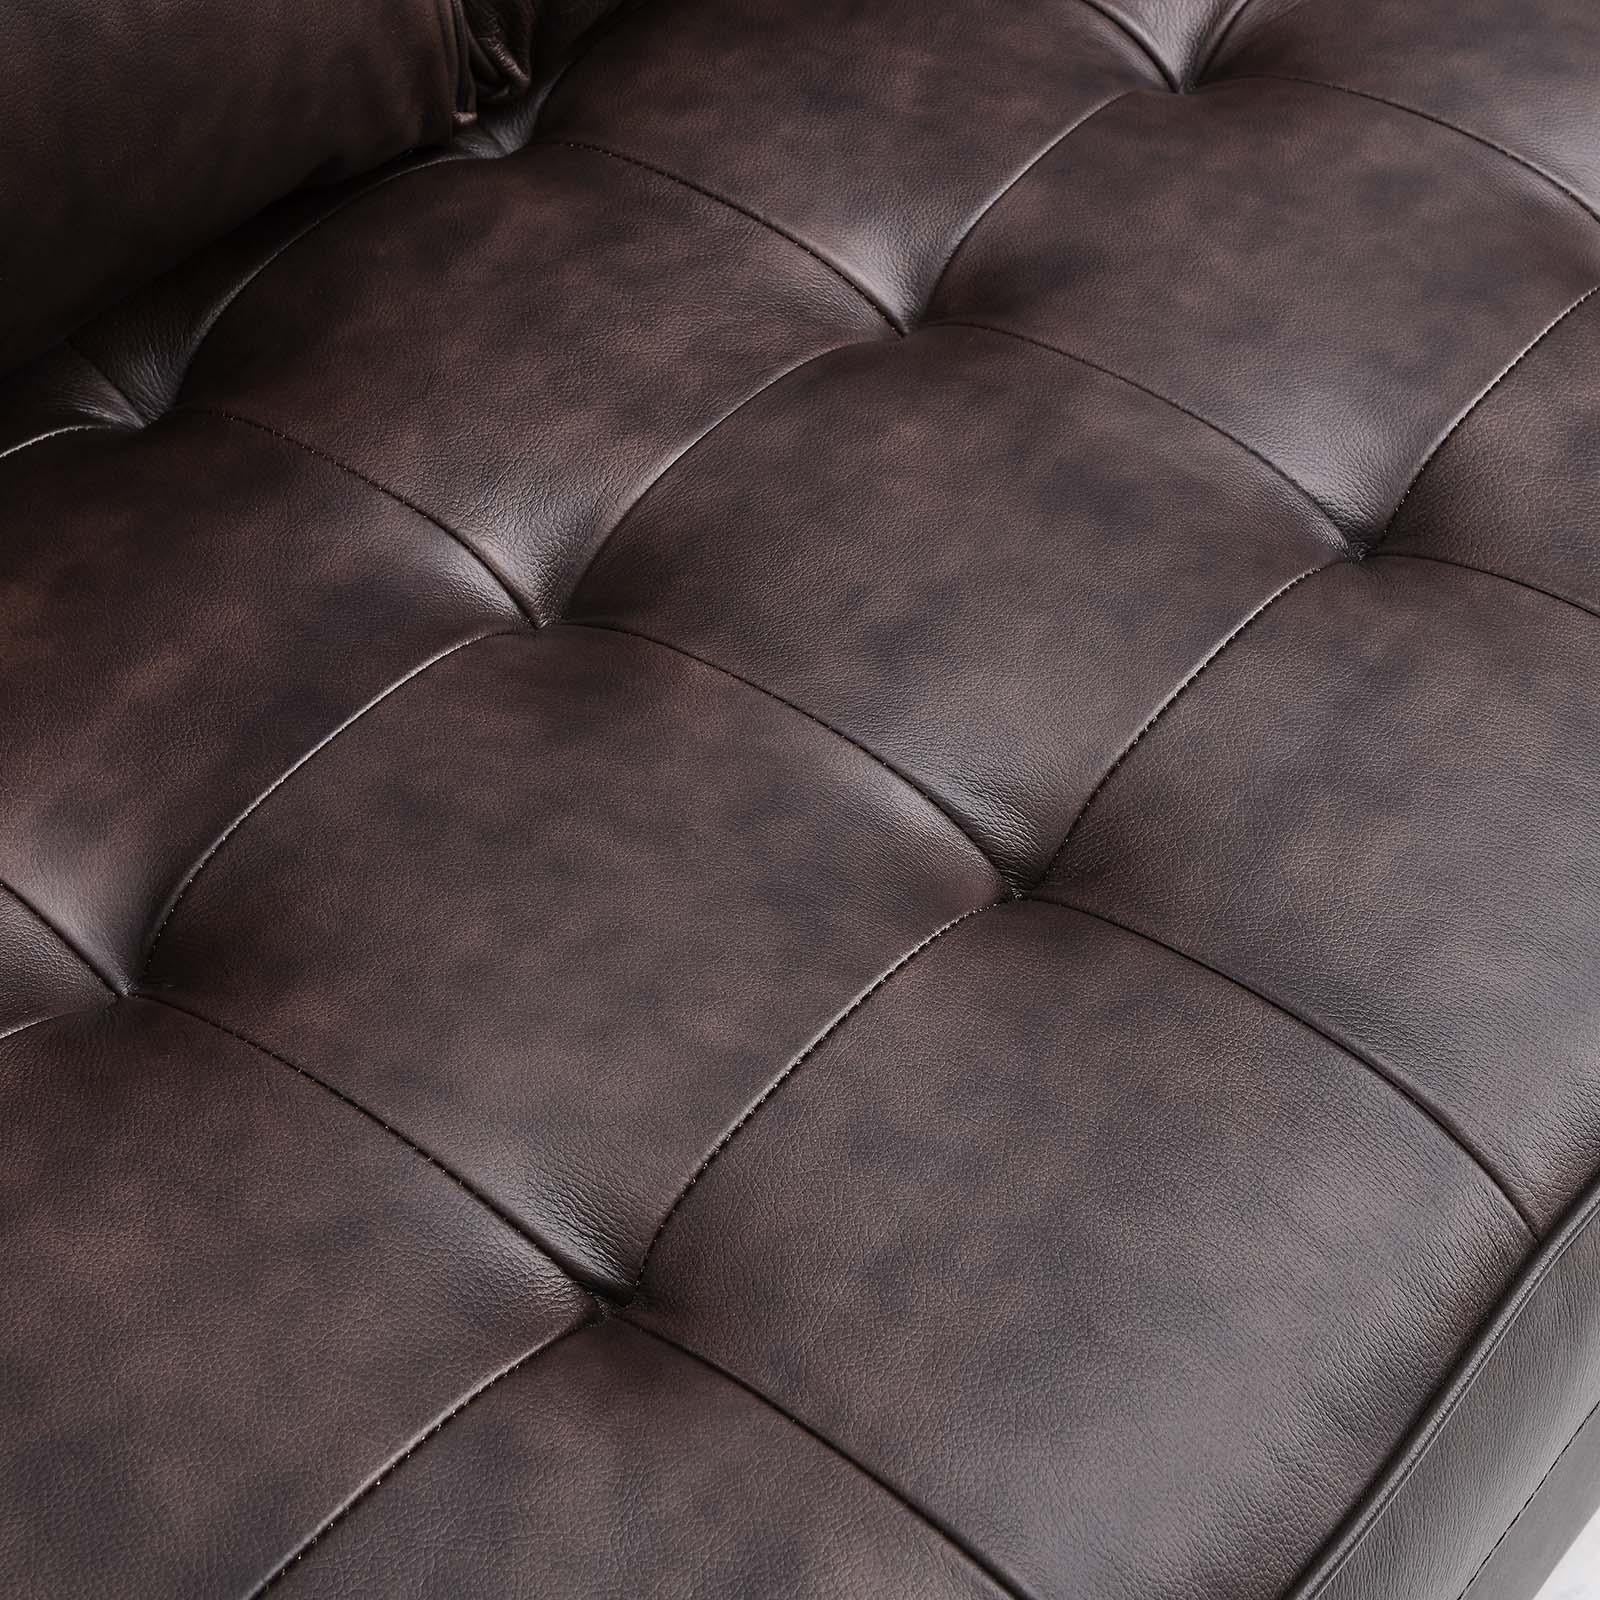 Modway Furniture Modern Valour Leather Loveseat - EEI-5870